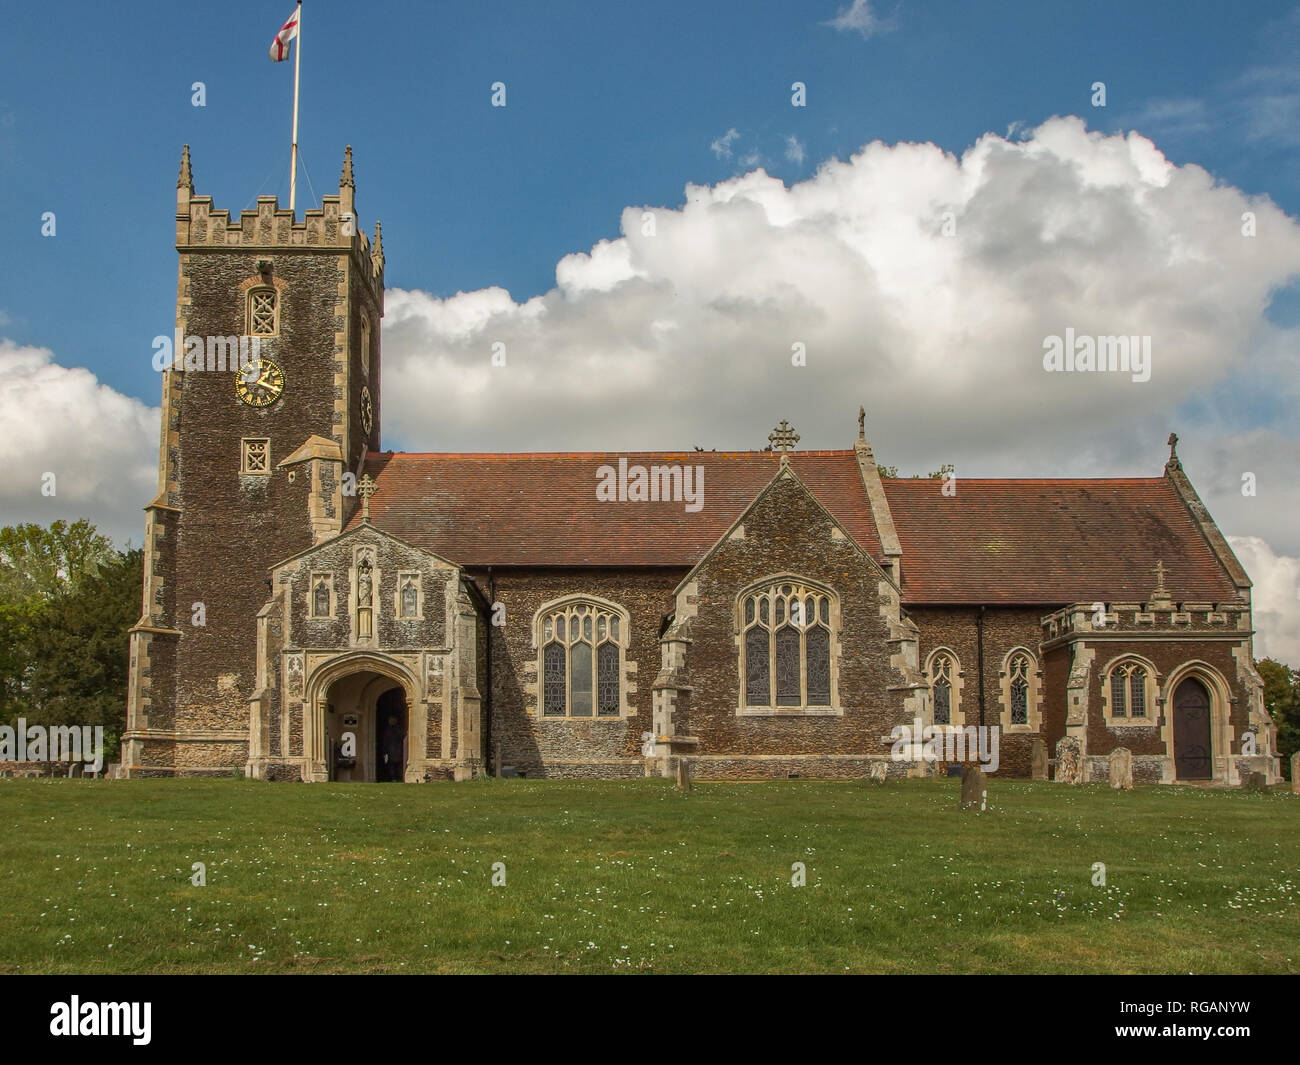 Sandringham, Norfolk, Großbritannien - 26 April 2014: vollständige Ansicht der Maria Magdalena Kirche auf dem Sandringham Estate in Nolfolk. Kreuz von St. George flag Flying fr Stockfoto